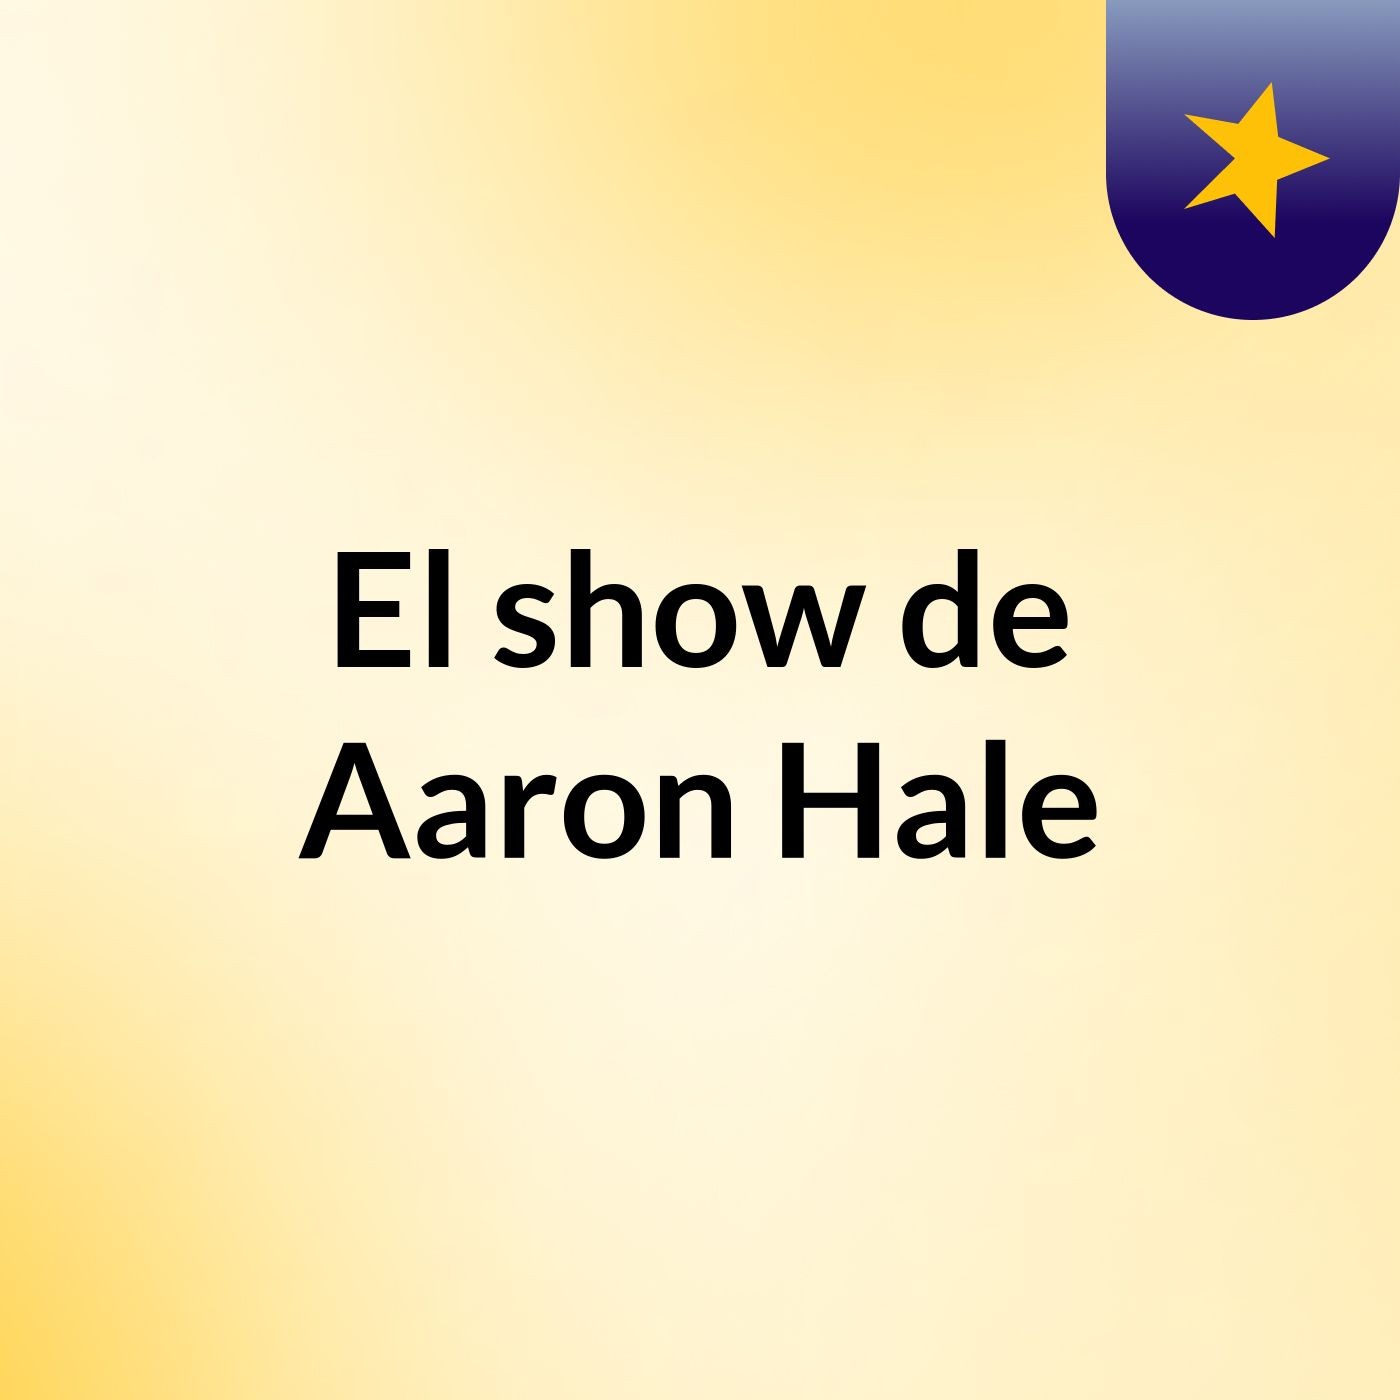 El show de Aaron Hale